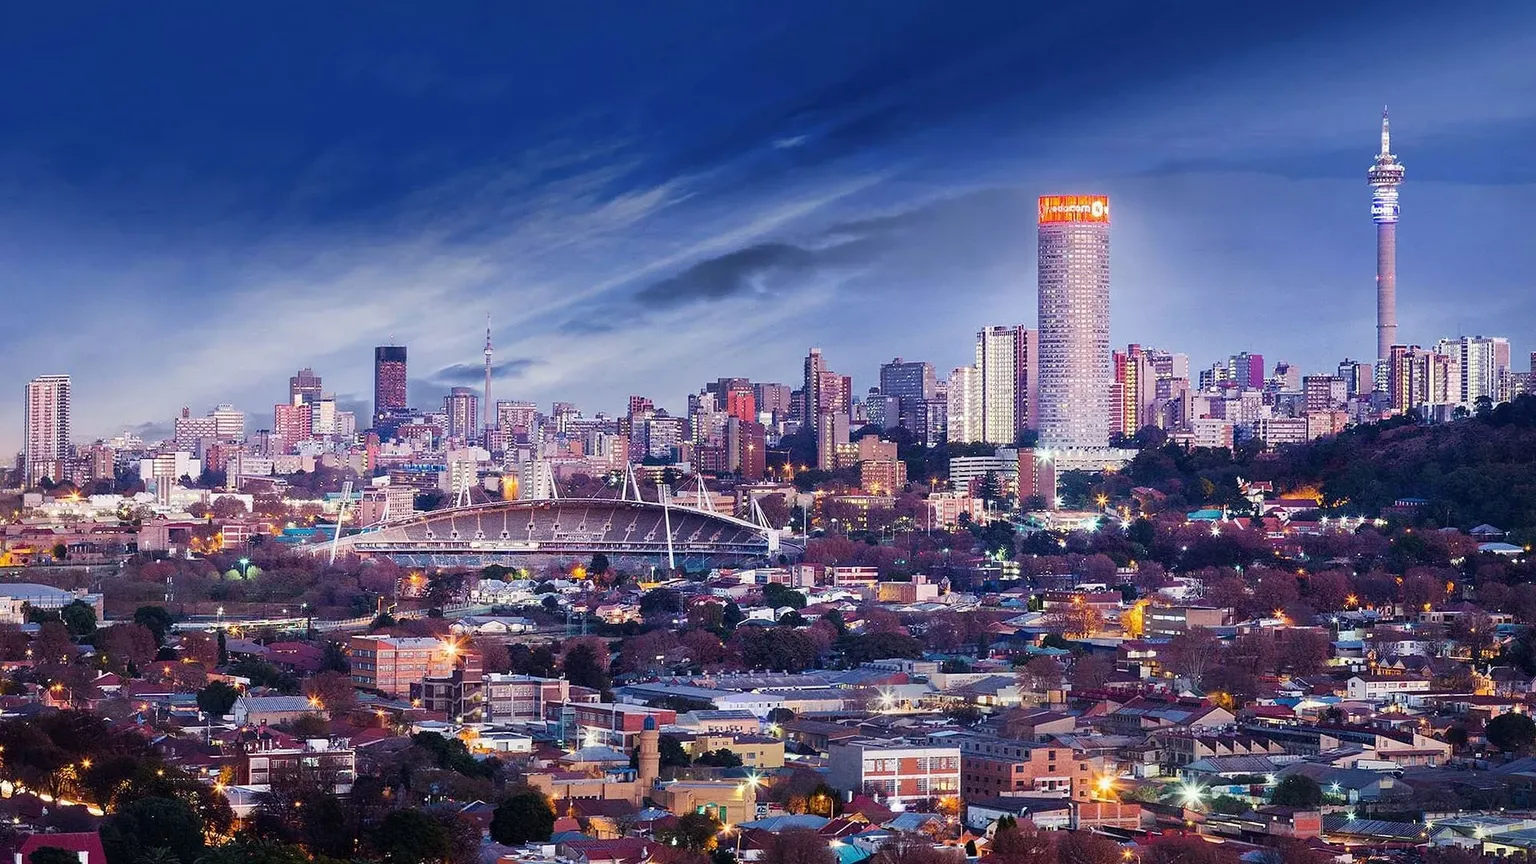 Johannesburg | Gauteng Region, South Africa - Rated 7.1